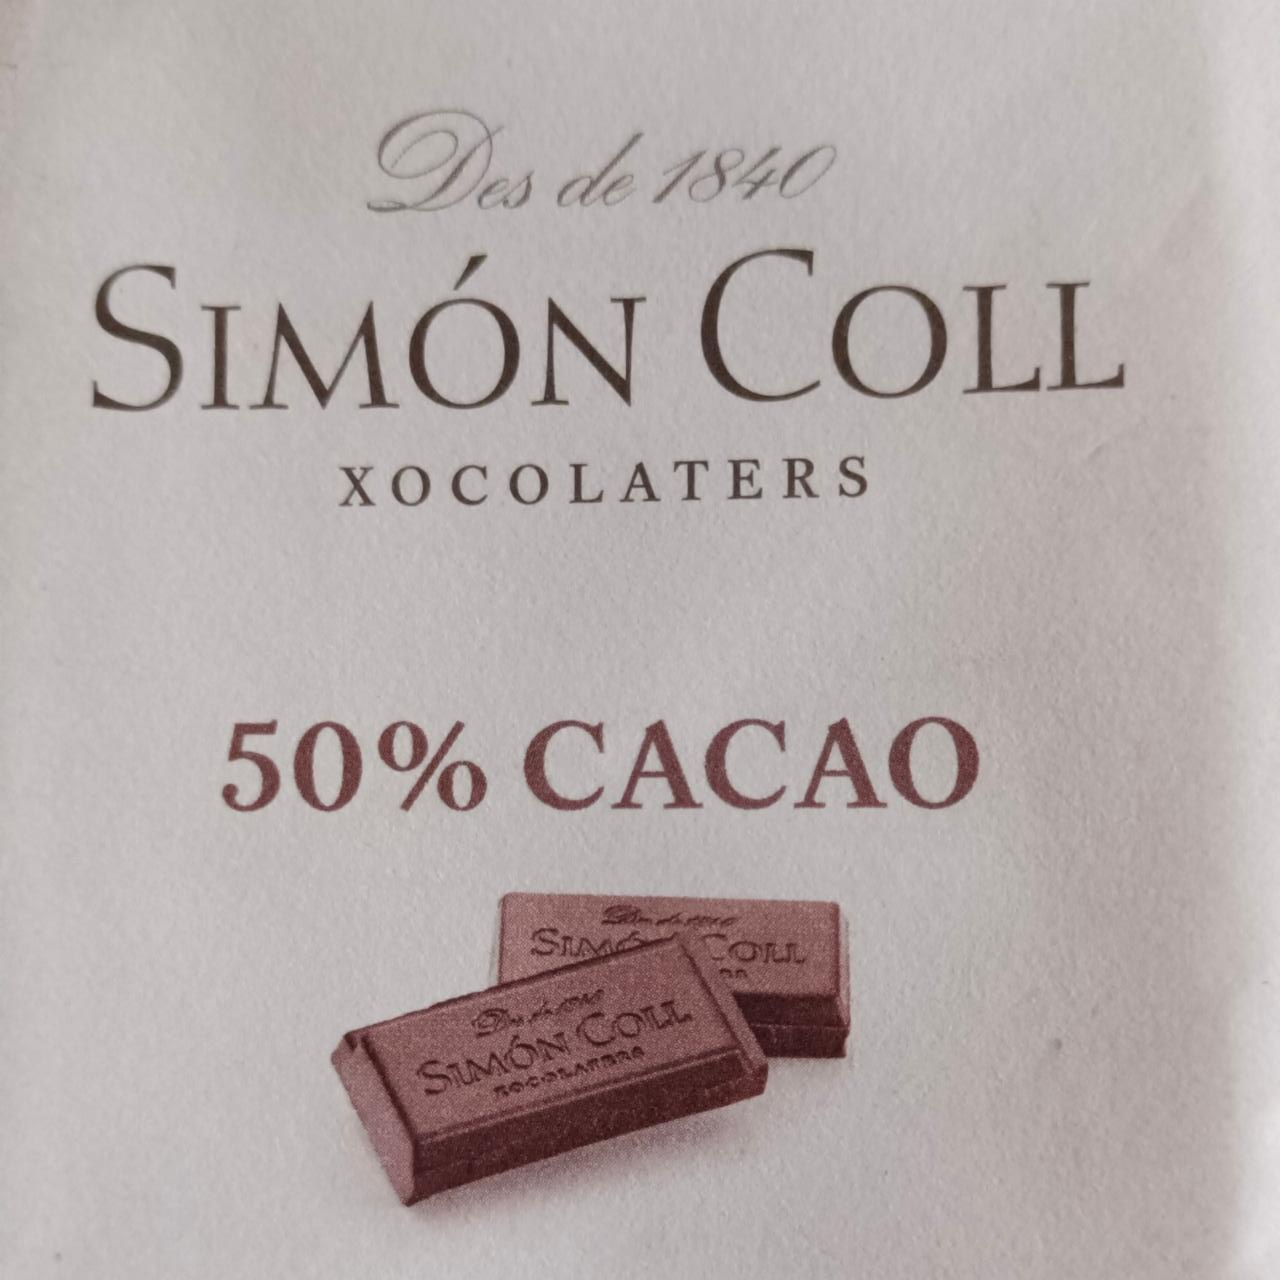 Fotografie - Xocolaters 50% Cacao Simón Coll